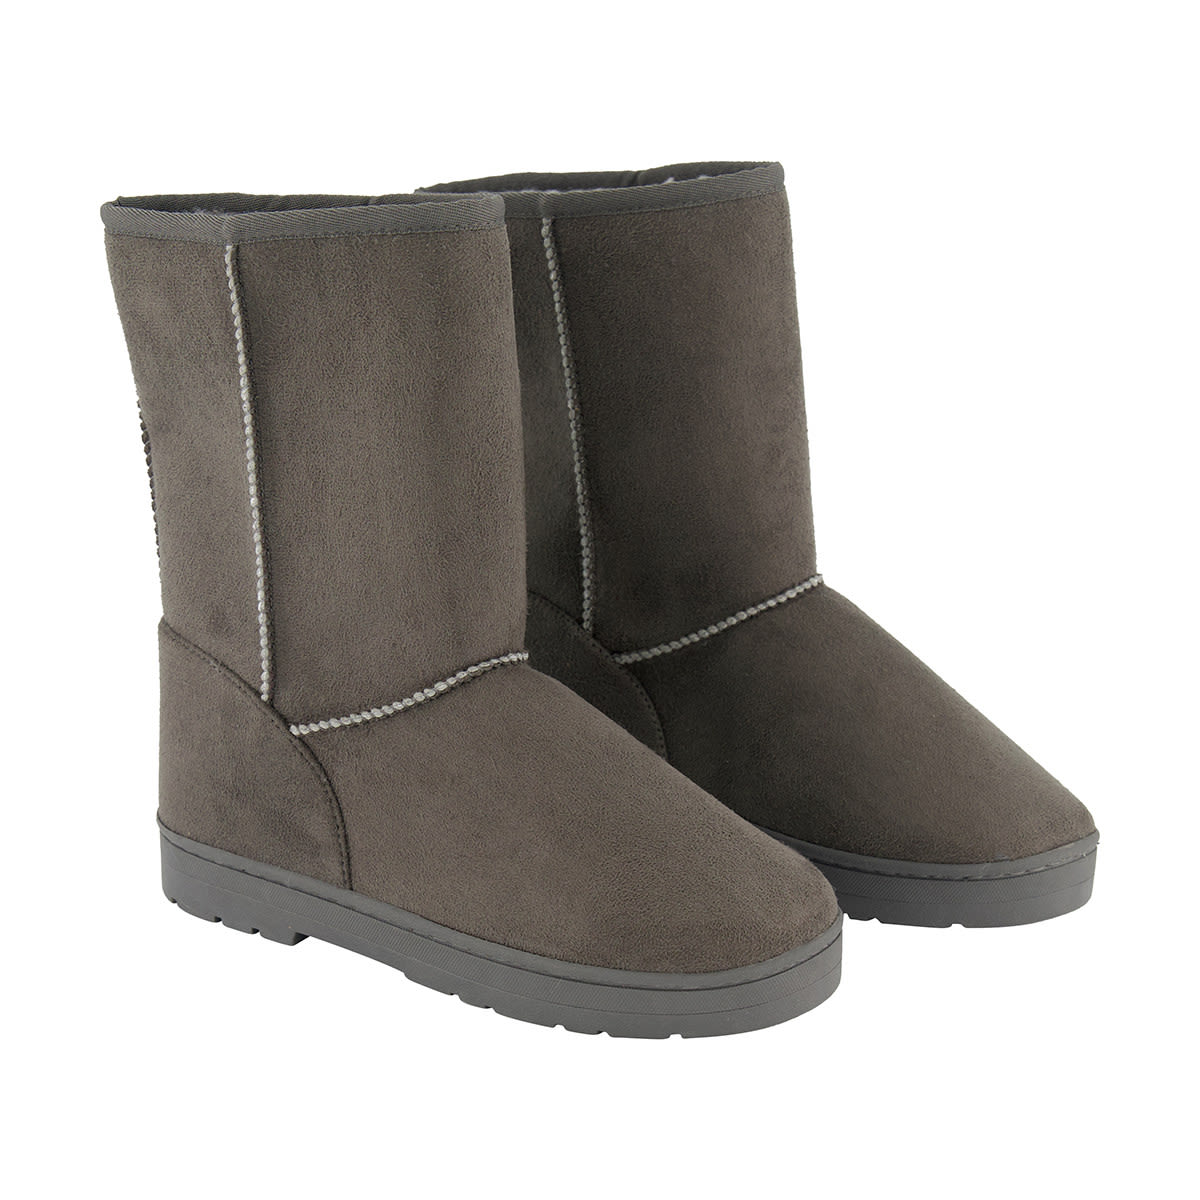 Tall Slipper Boots - Kmart